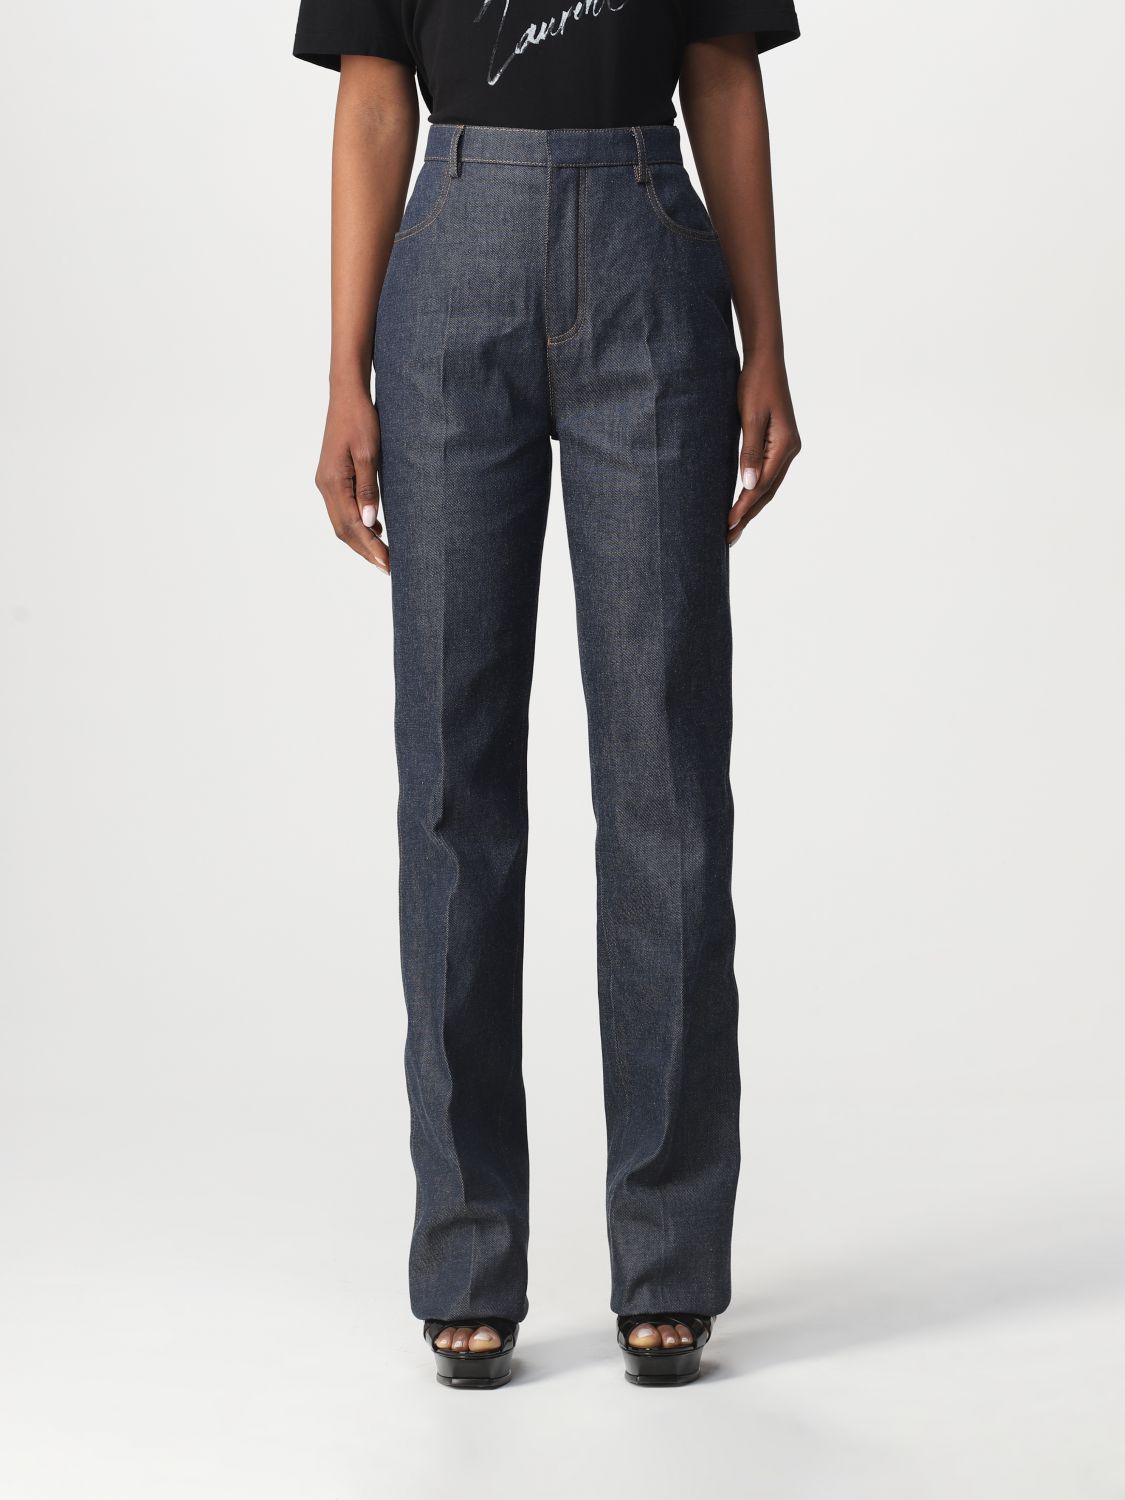 Jeans Saint Laurent: Saint Laurent cotton denim jeans denim 1